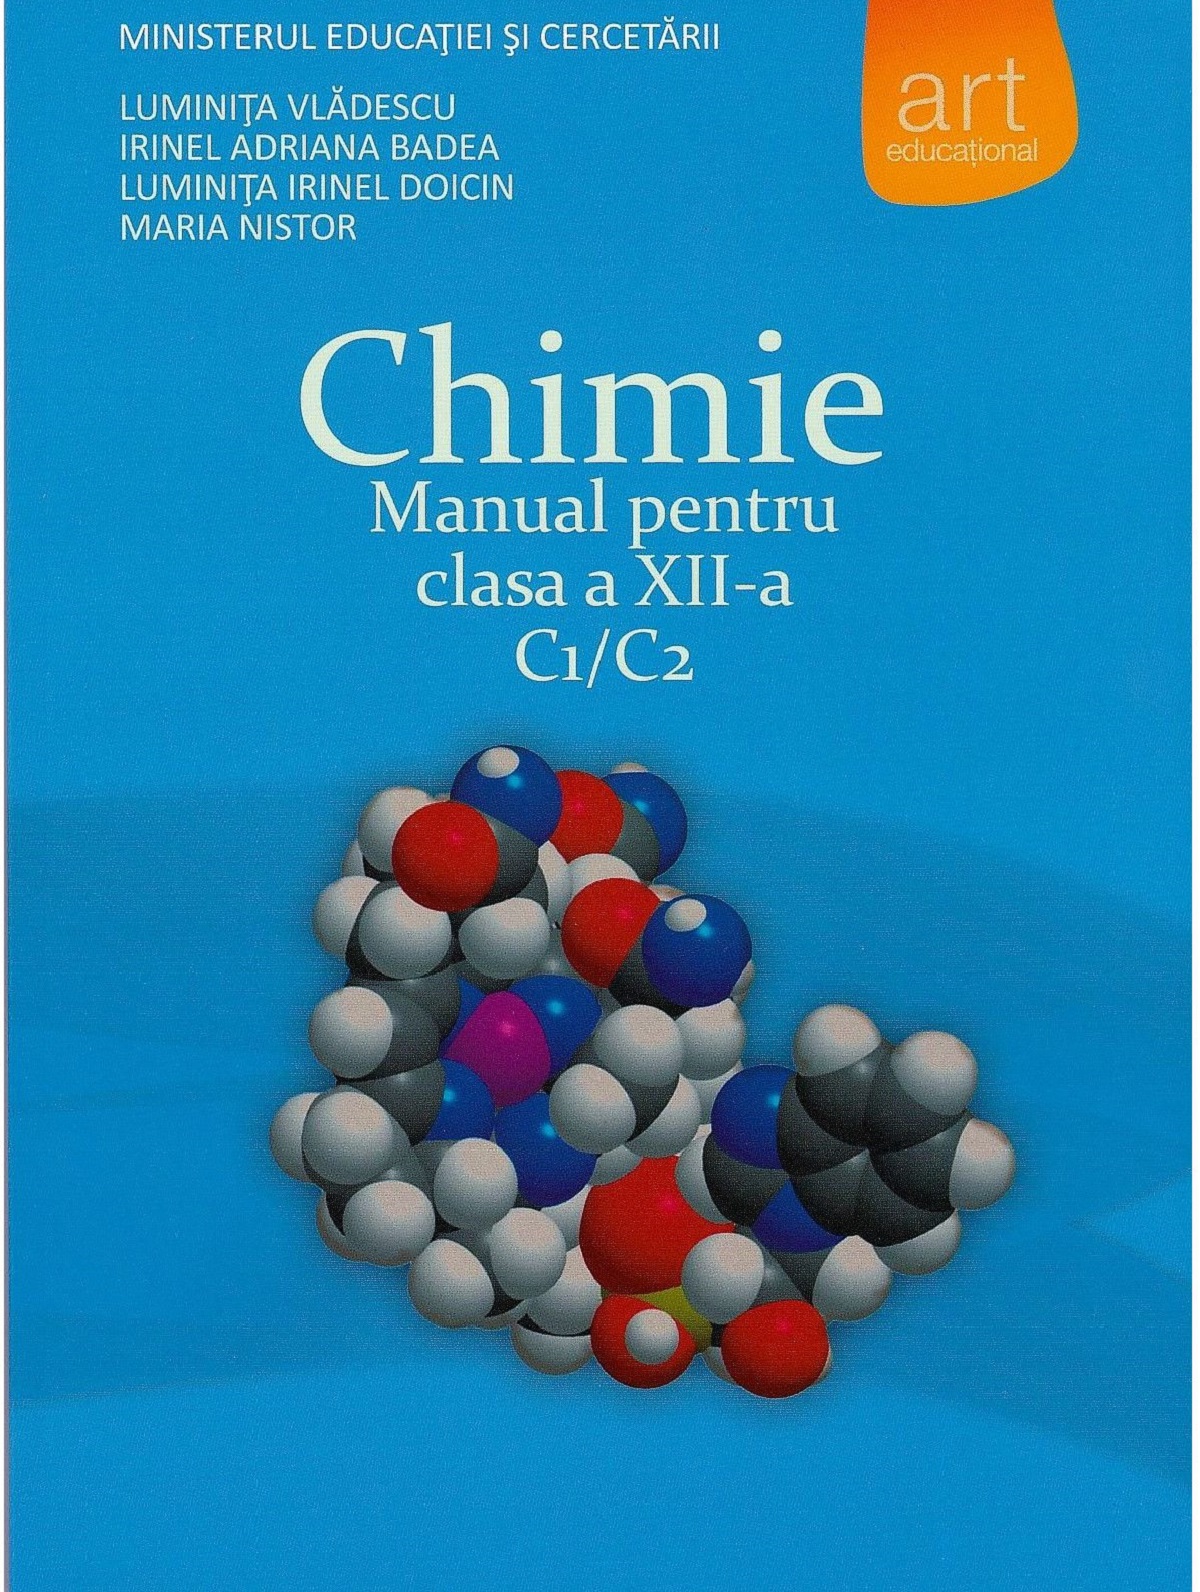 Chimie - Clasa 12 - Manual C1/C2 - Luminita Vladescu